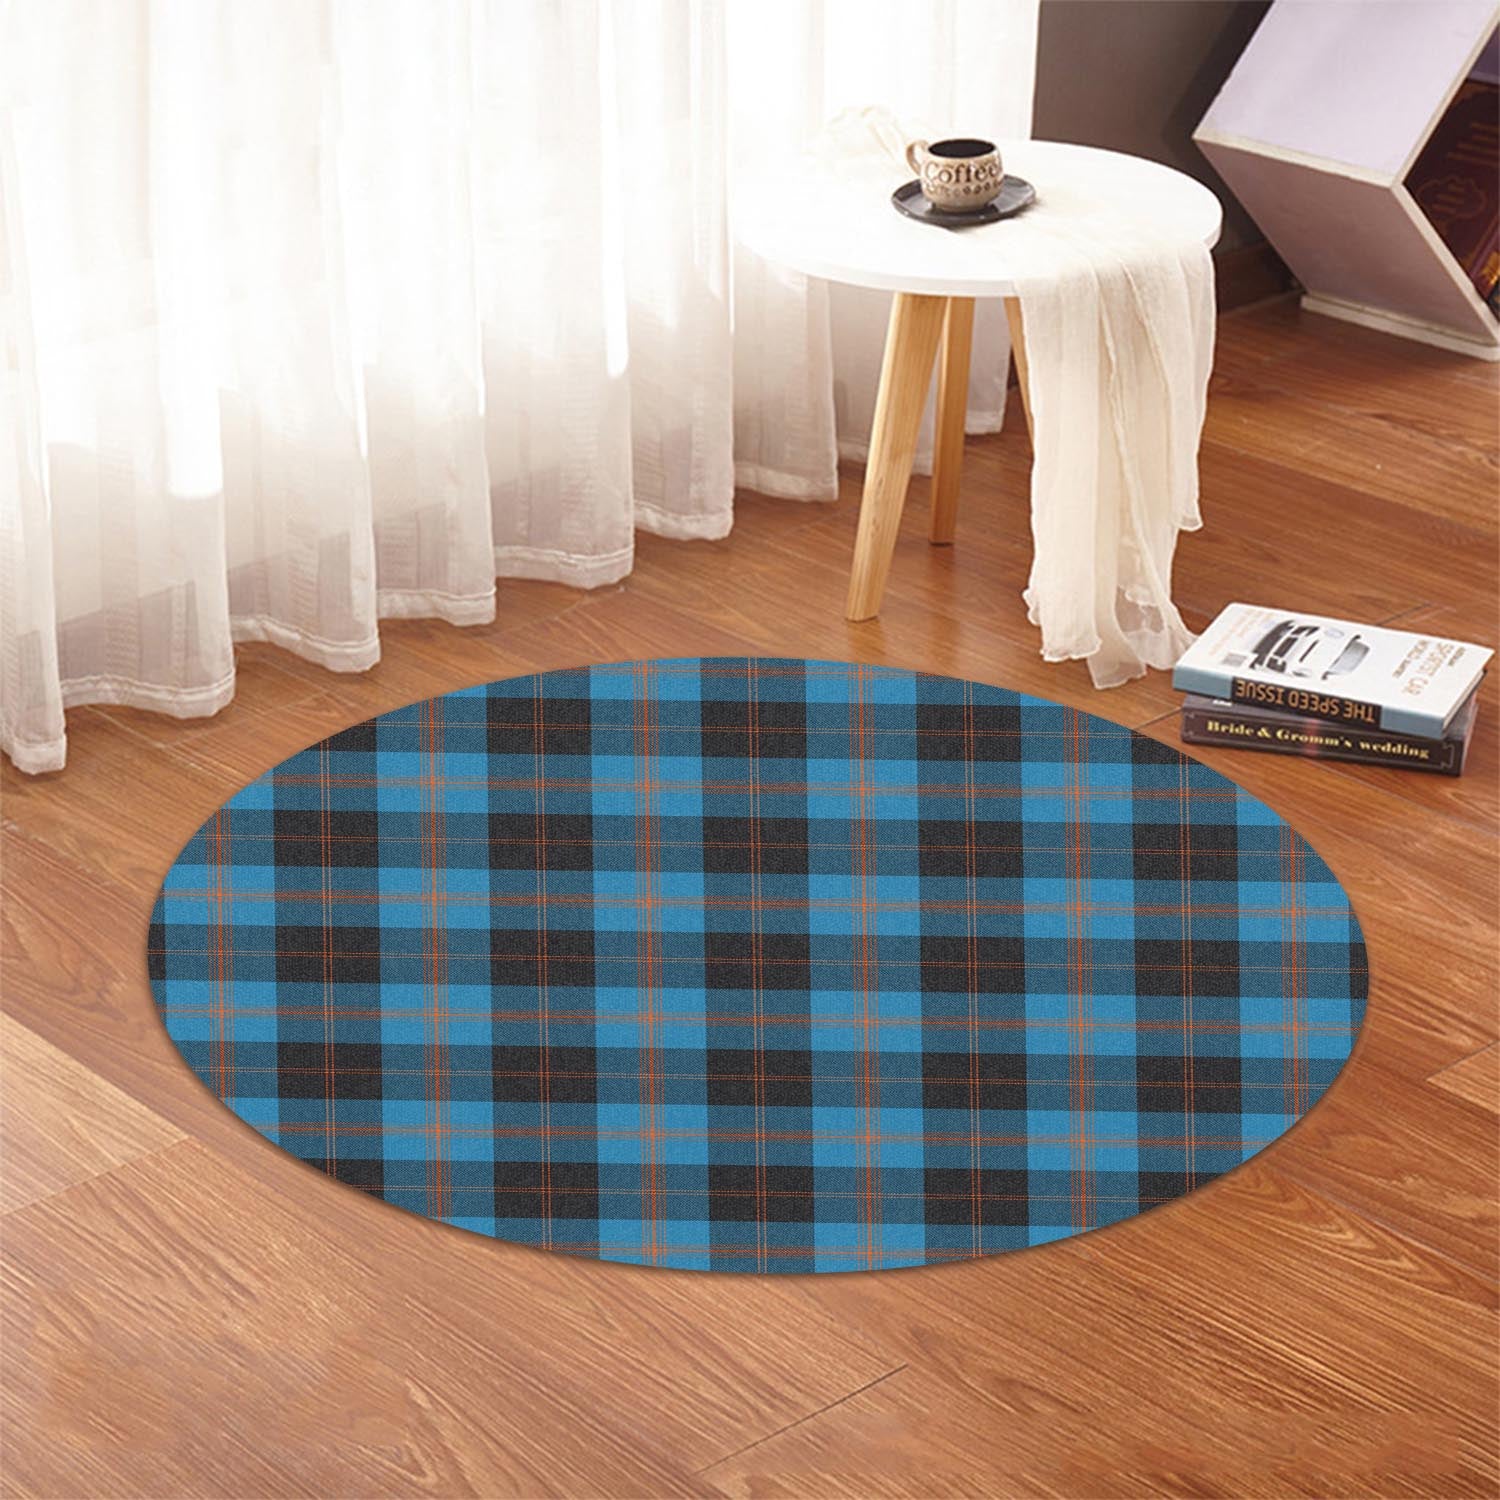 garden-tartan-round-rug